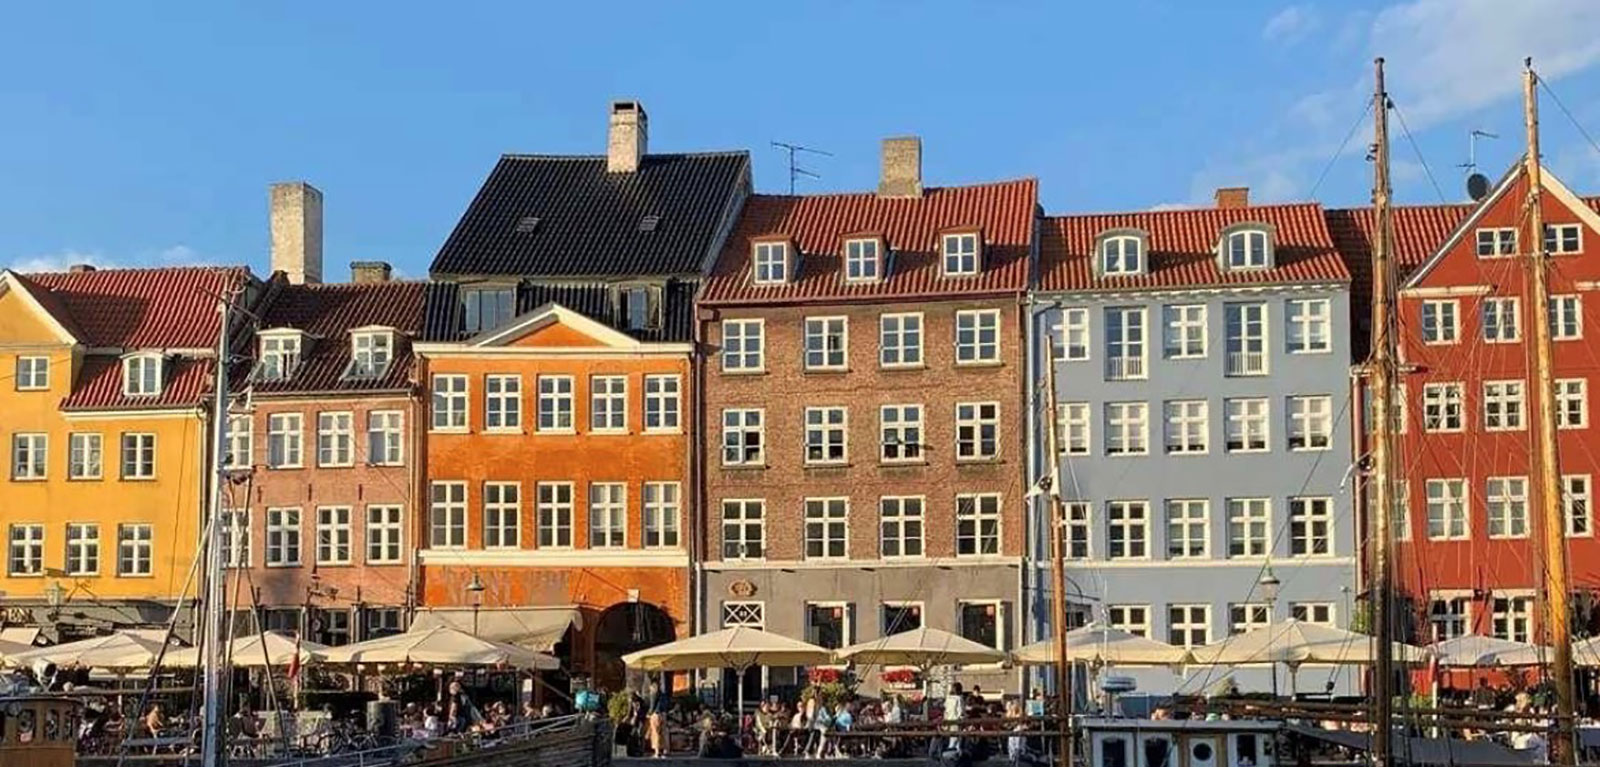 Houses in Sweden